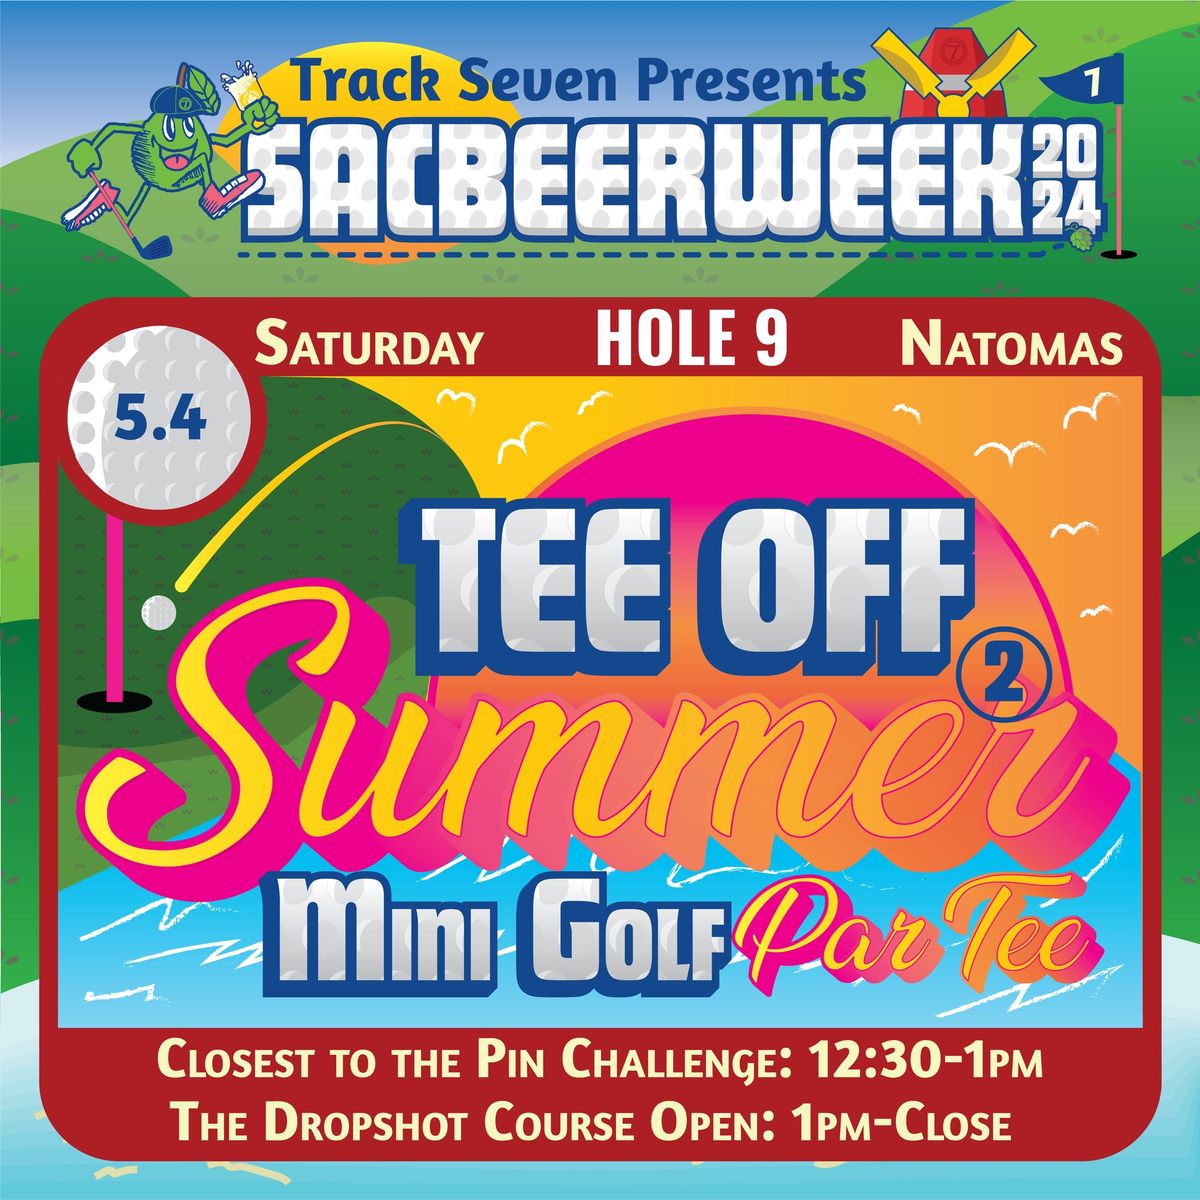 SBW24: Tee Off 2 Summer: Mini Golf Par-Tee